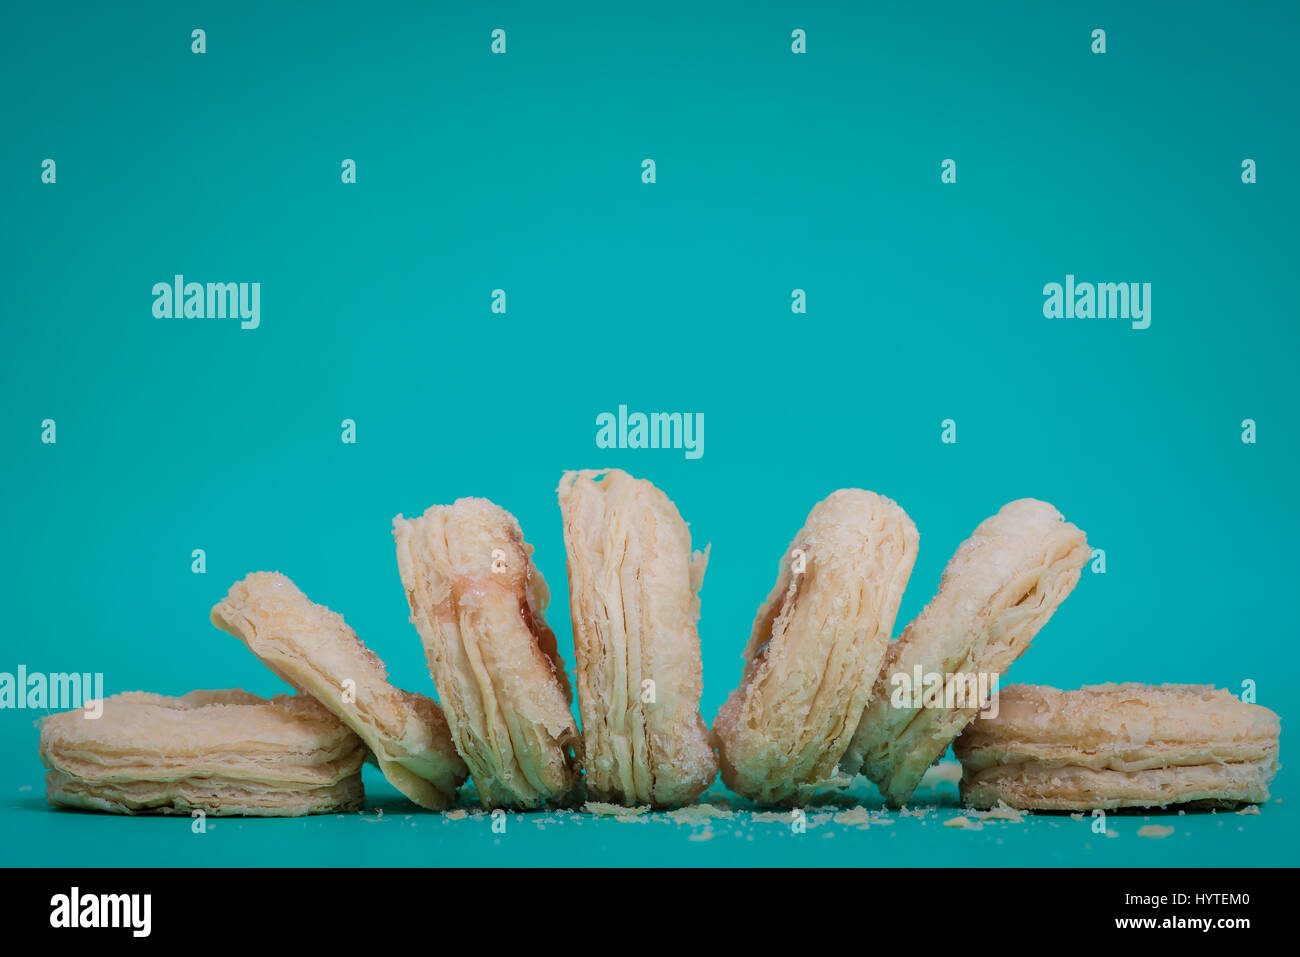 Erdbeermarmelade Cookies auf blauem Hintergrund Stockfoto